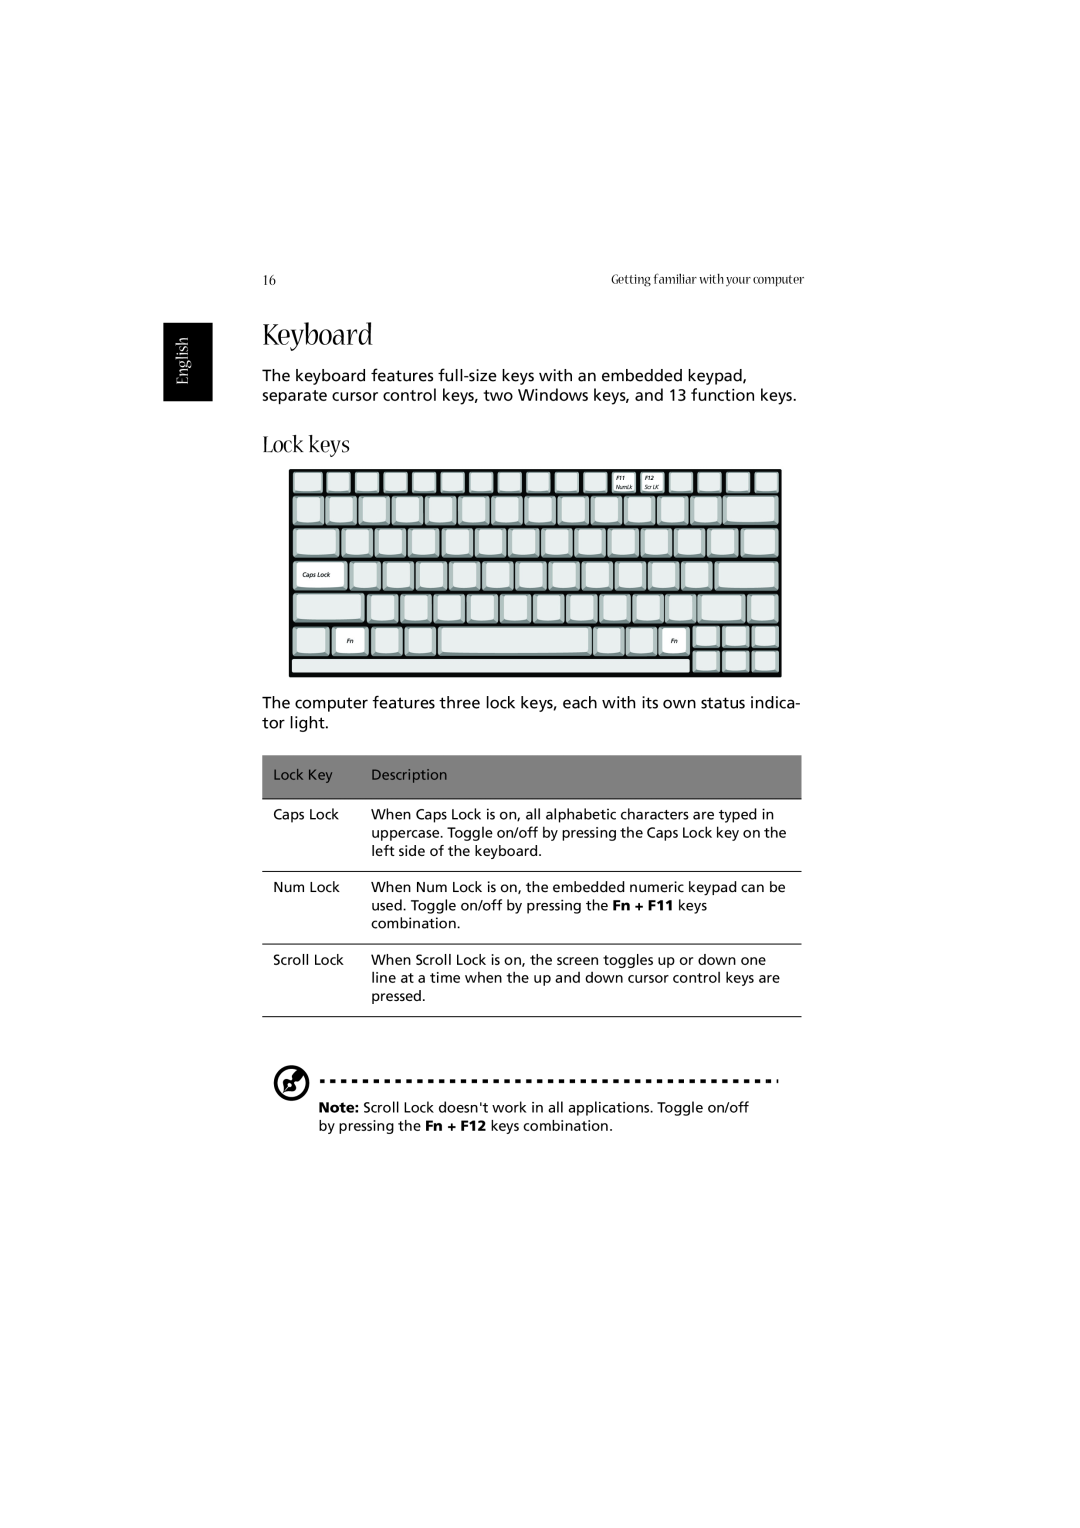 Acer 2010 manual Keyboard, Lock keys, English 